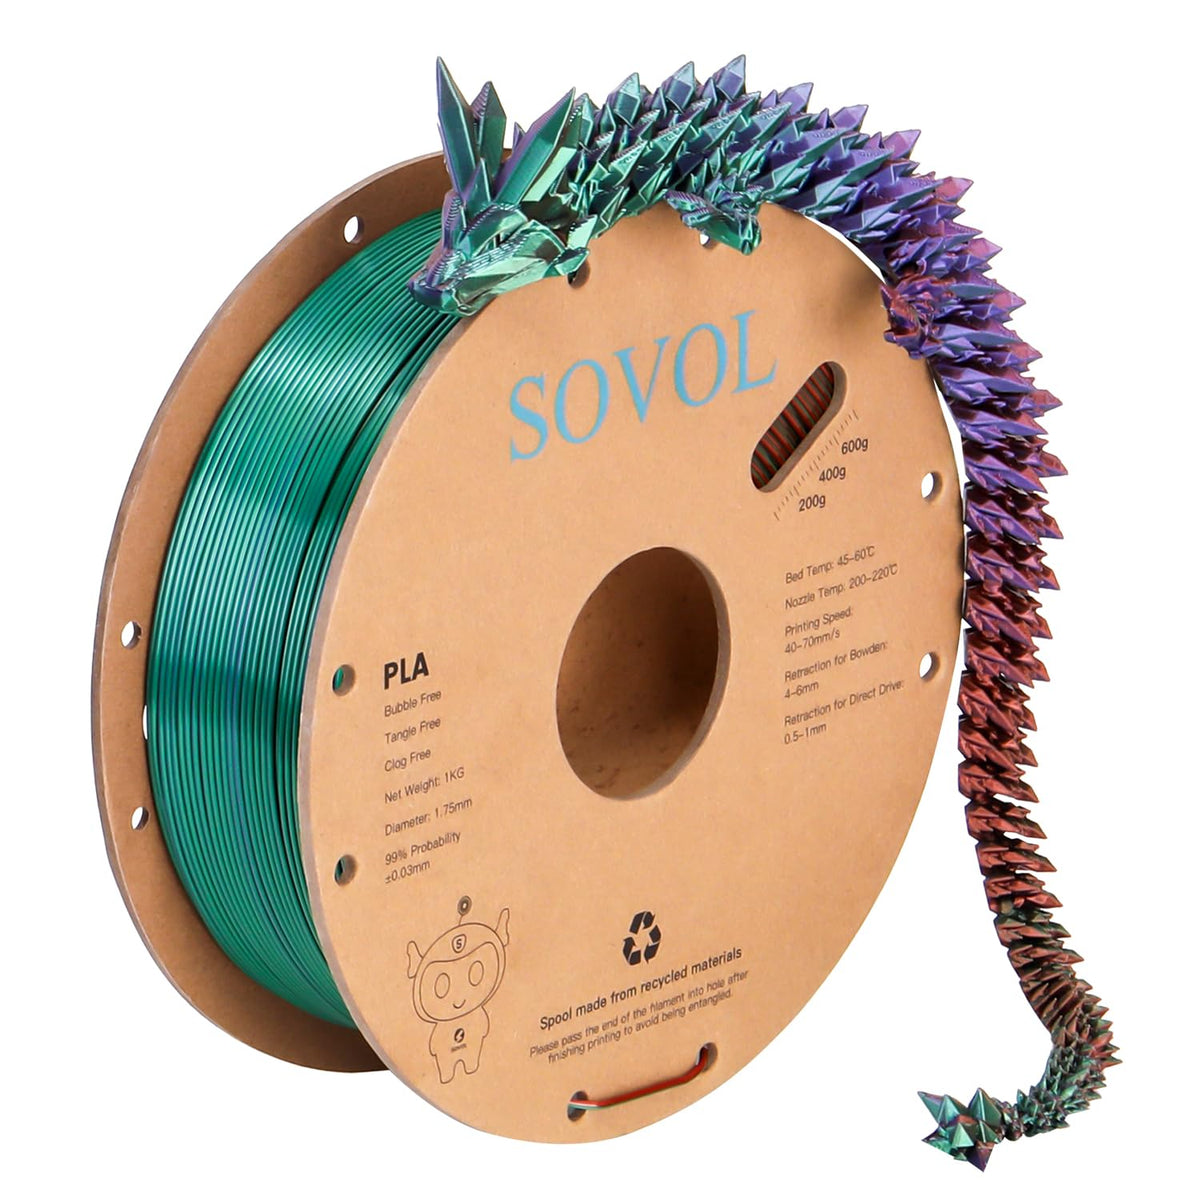 #sovol filament color_Tri-Green Purple Copper